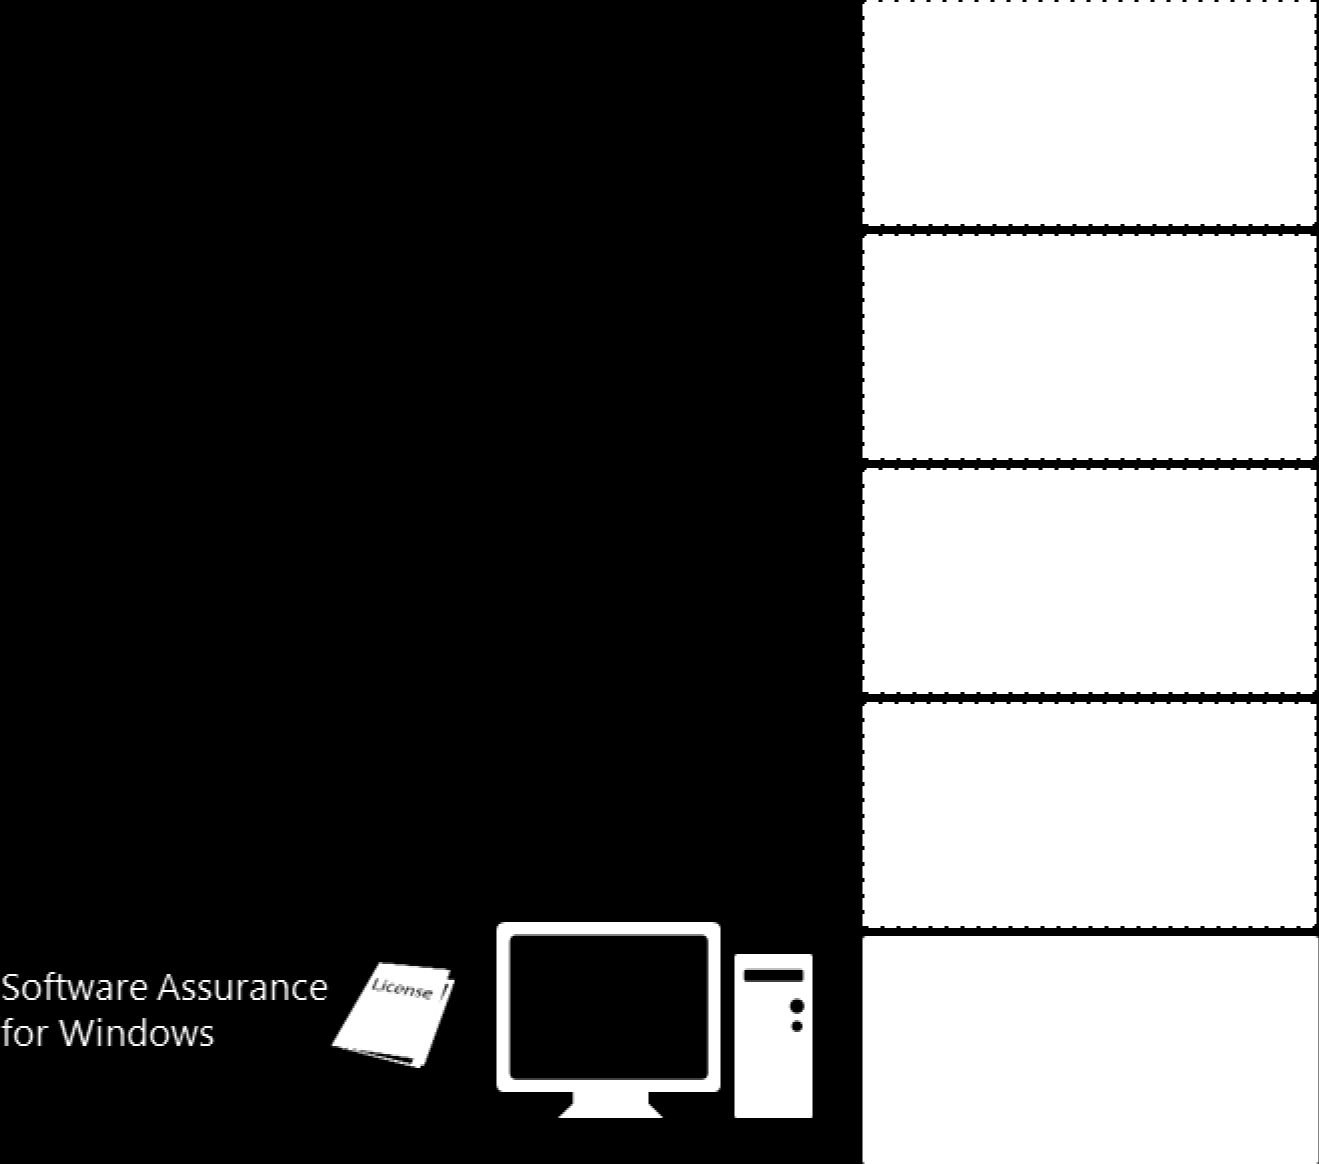 4. Lizenzsystem von Microsoft Desktop-Betriebssysteme Eigentlich Klassische gerätebasierte Lizenz Jedoch eine Besonderheit: Es darf nur eine Kopie